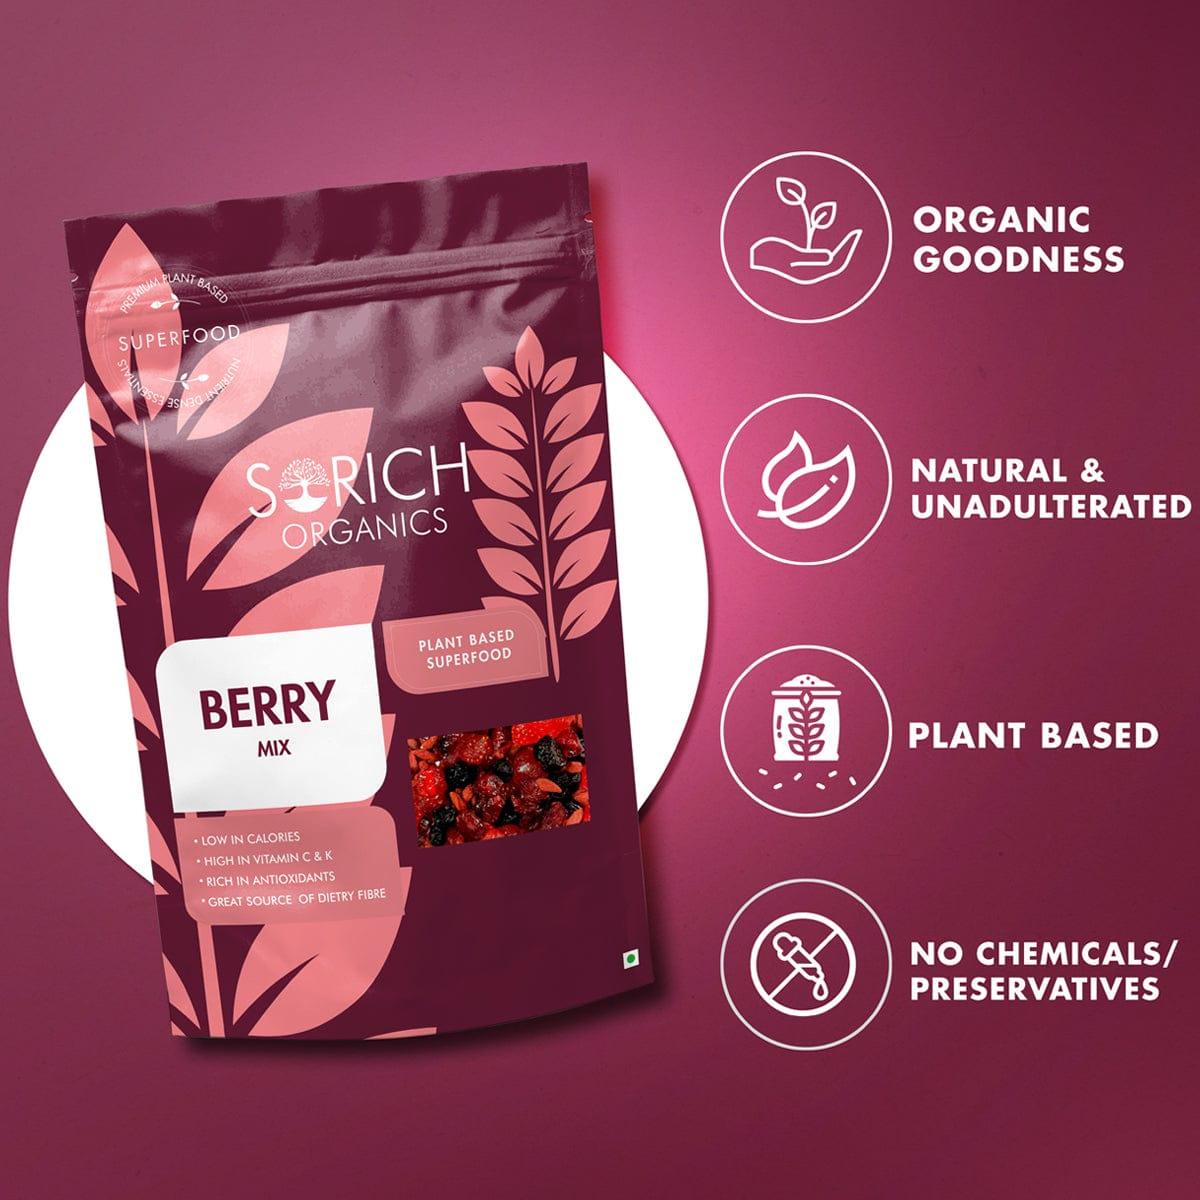 berries health benefits